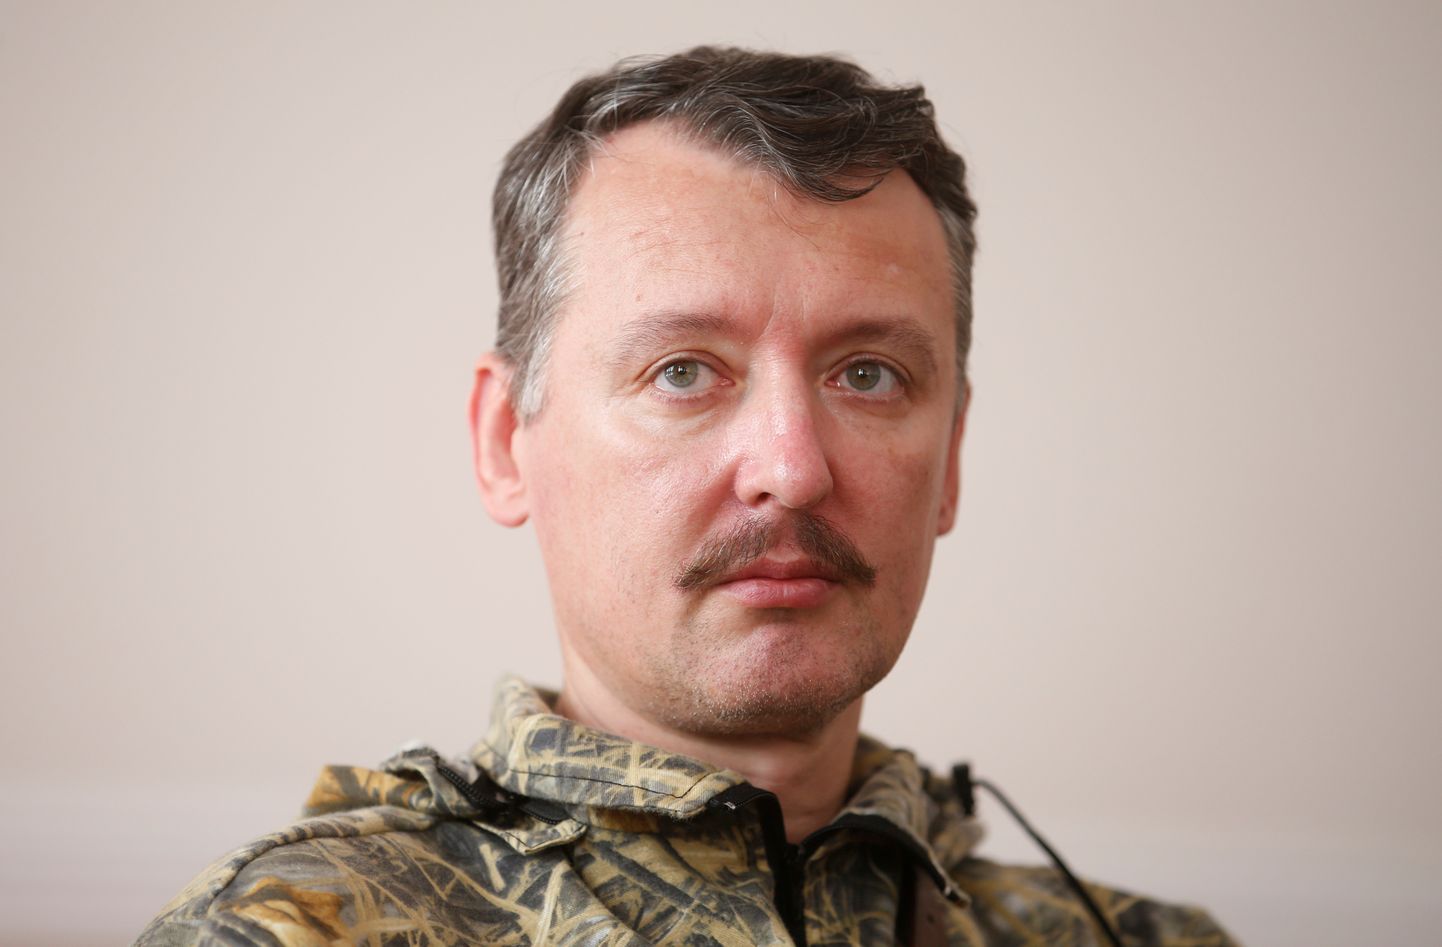 Vene sõjaväe endine komandör Igor Girkin (Strelkov).